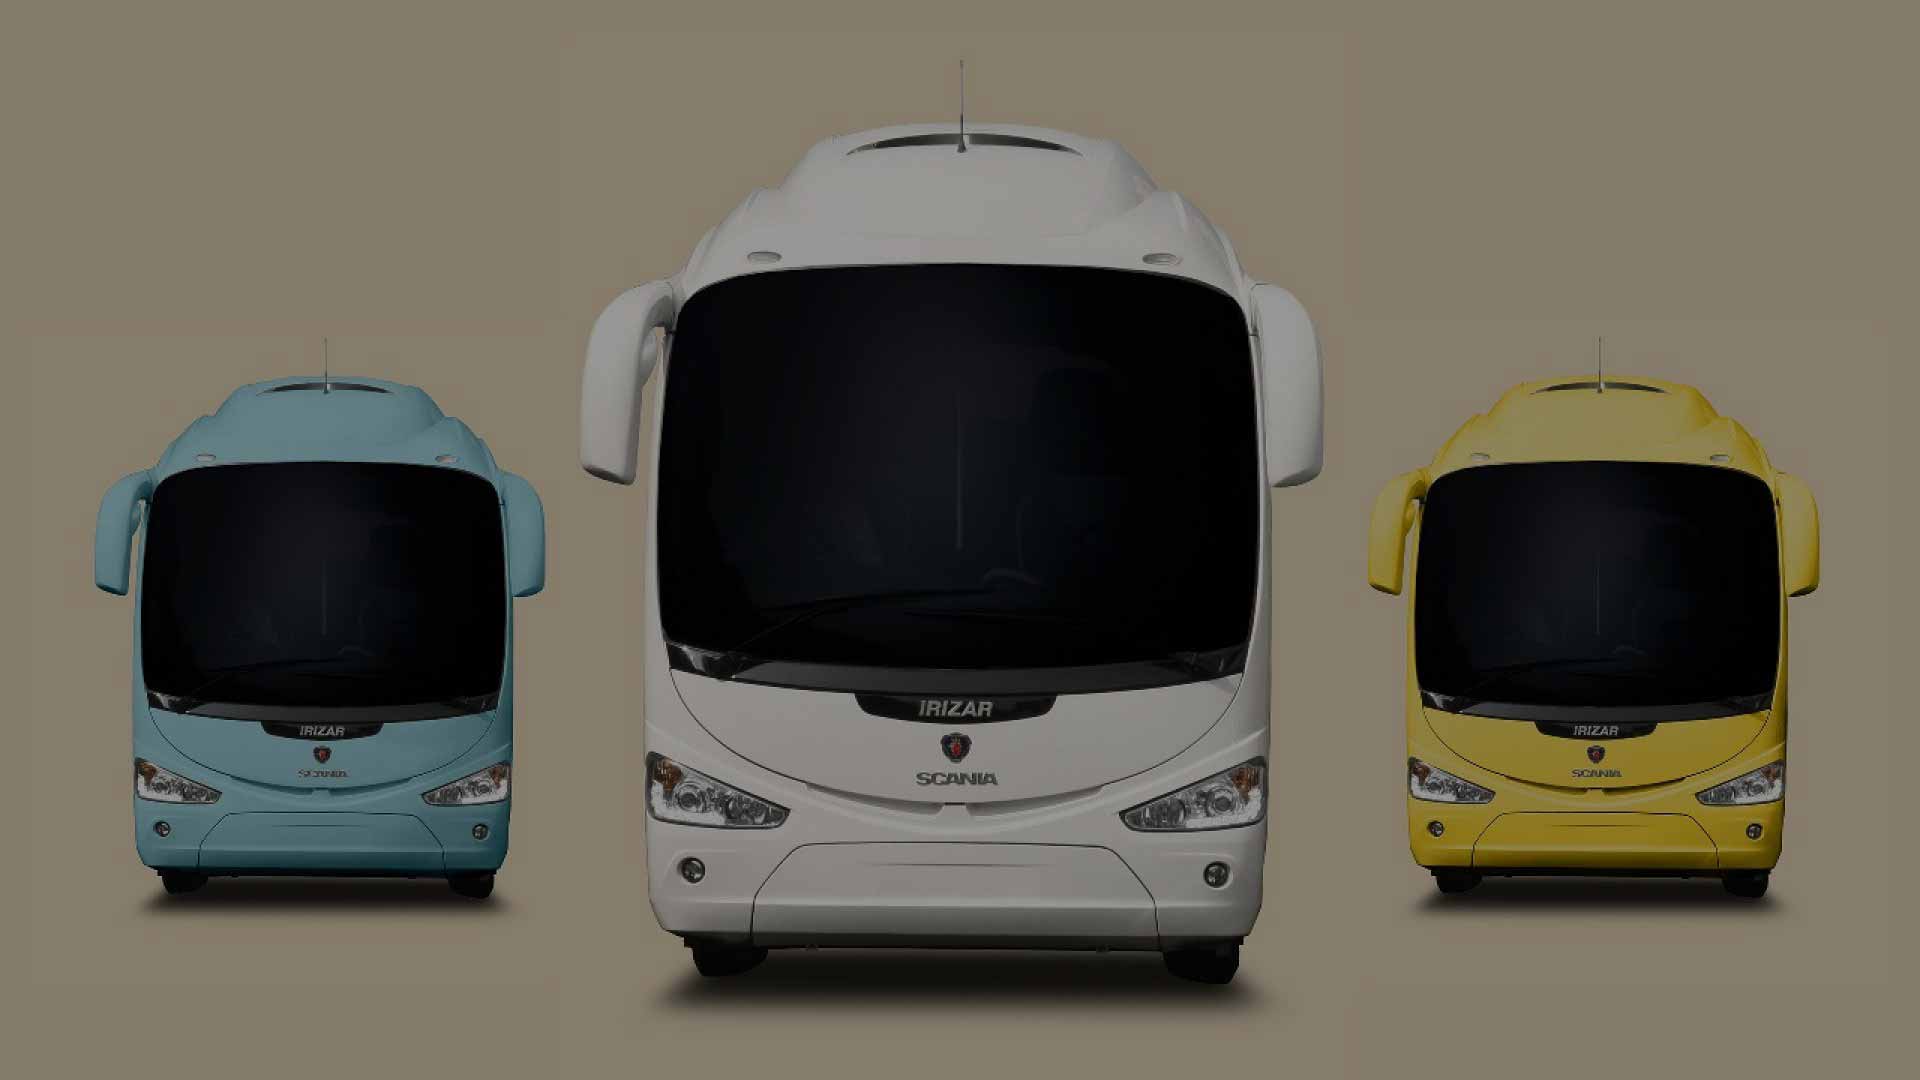 Конфигурация и спецификации автобусов Scania Irizar i6